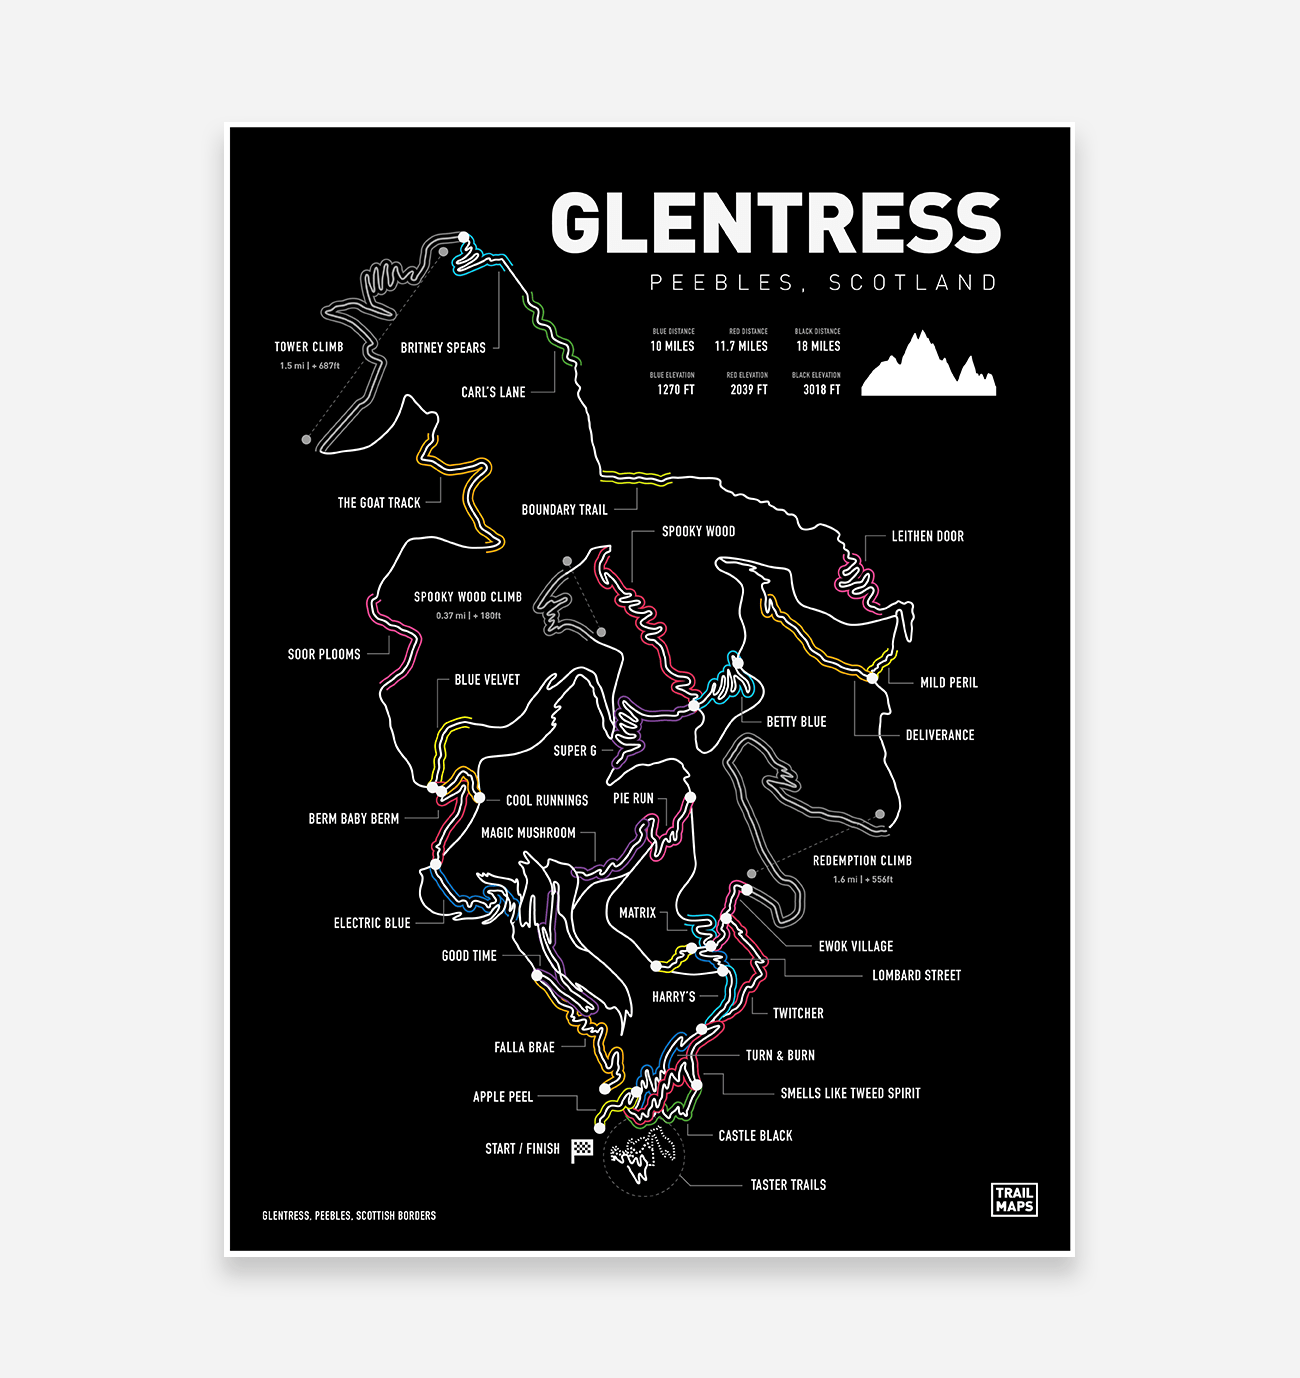 Glentress-Kunstdruck